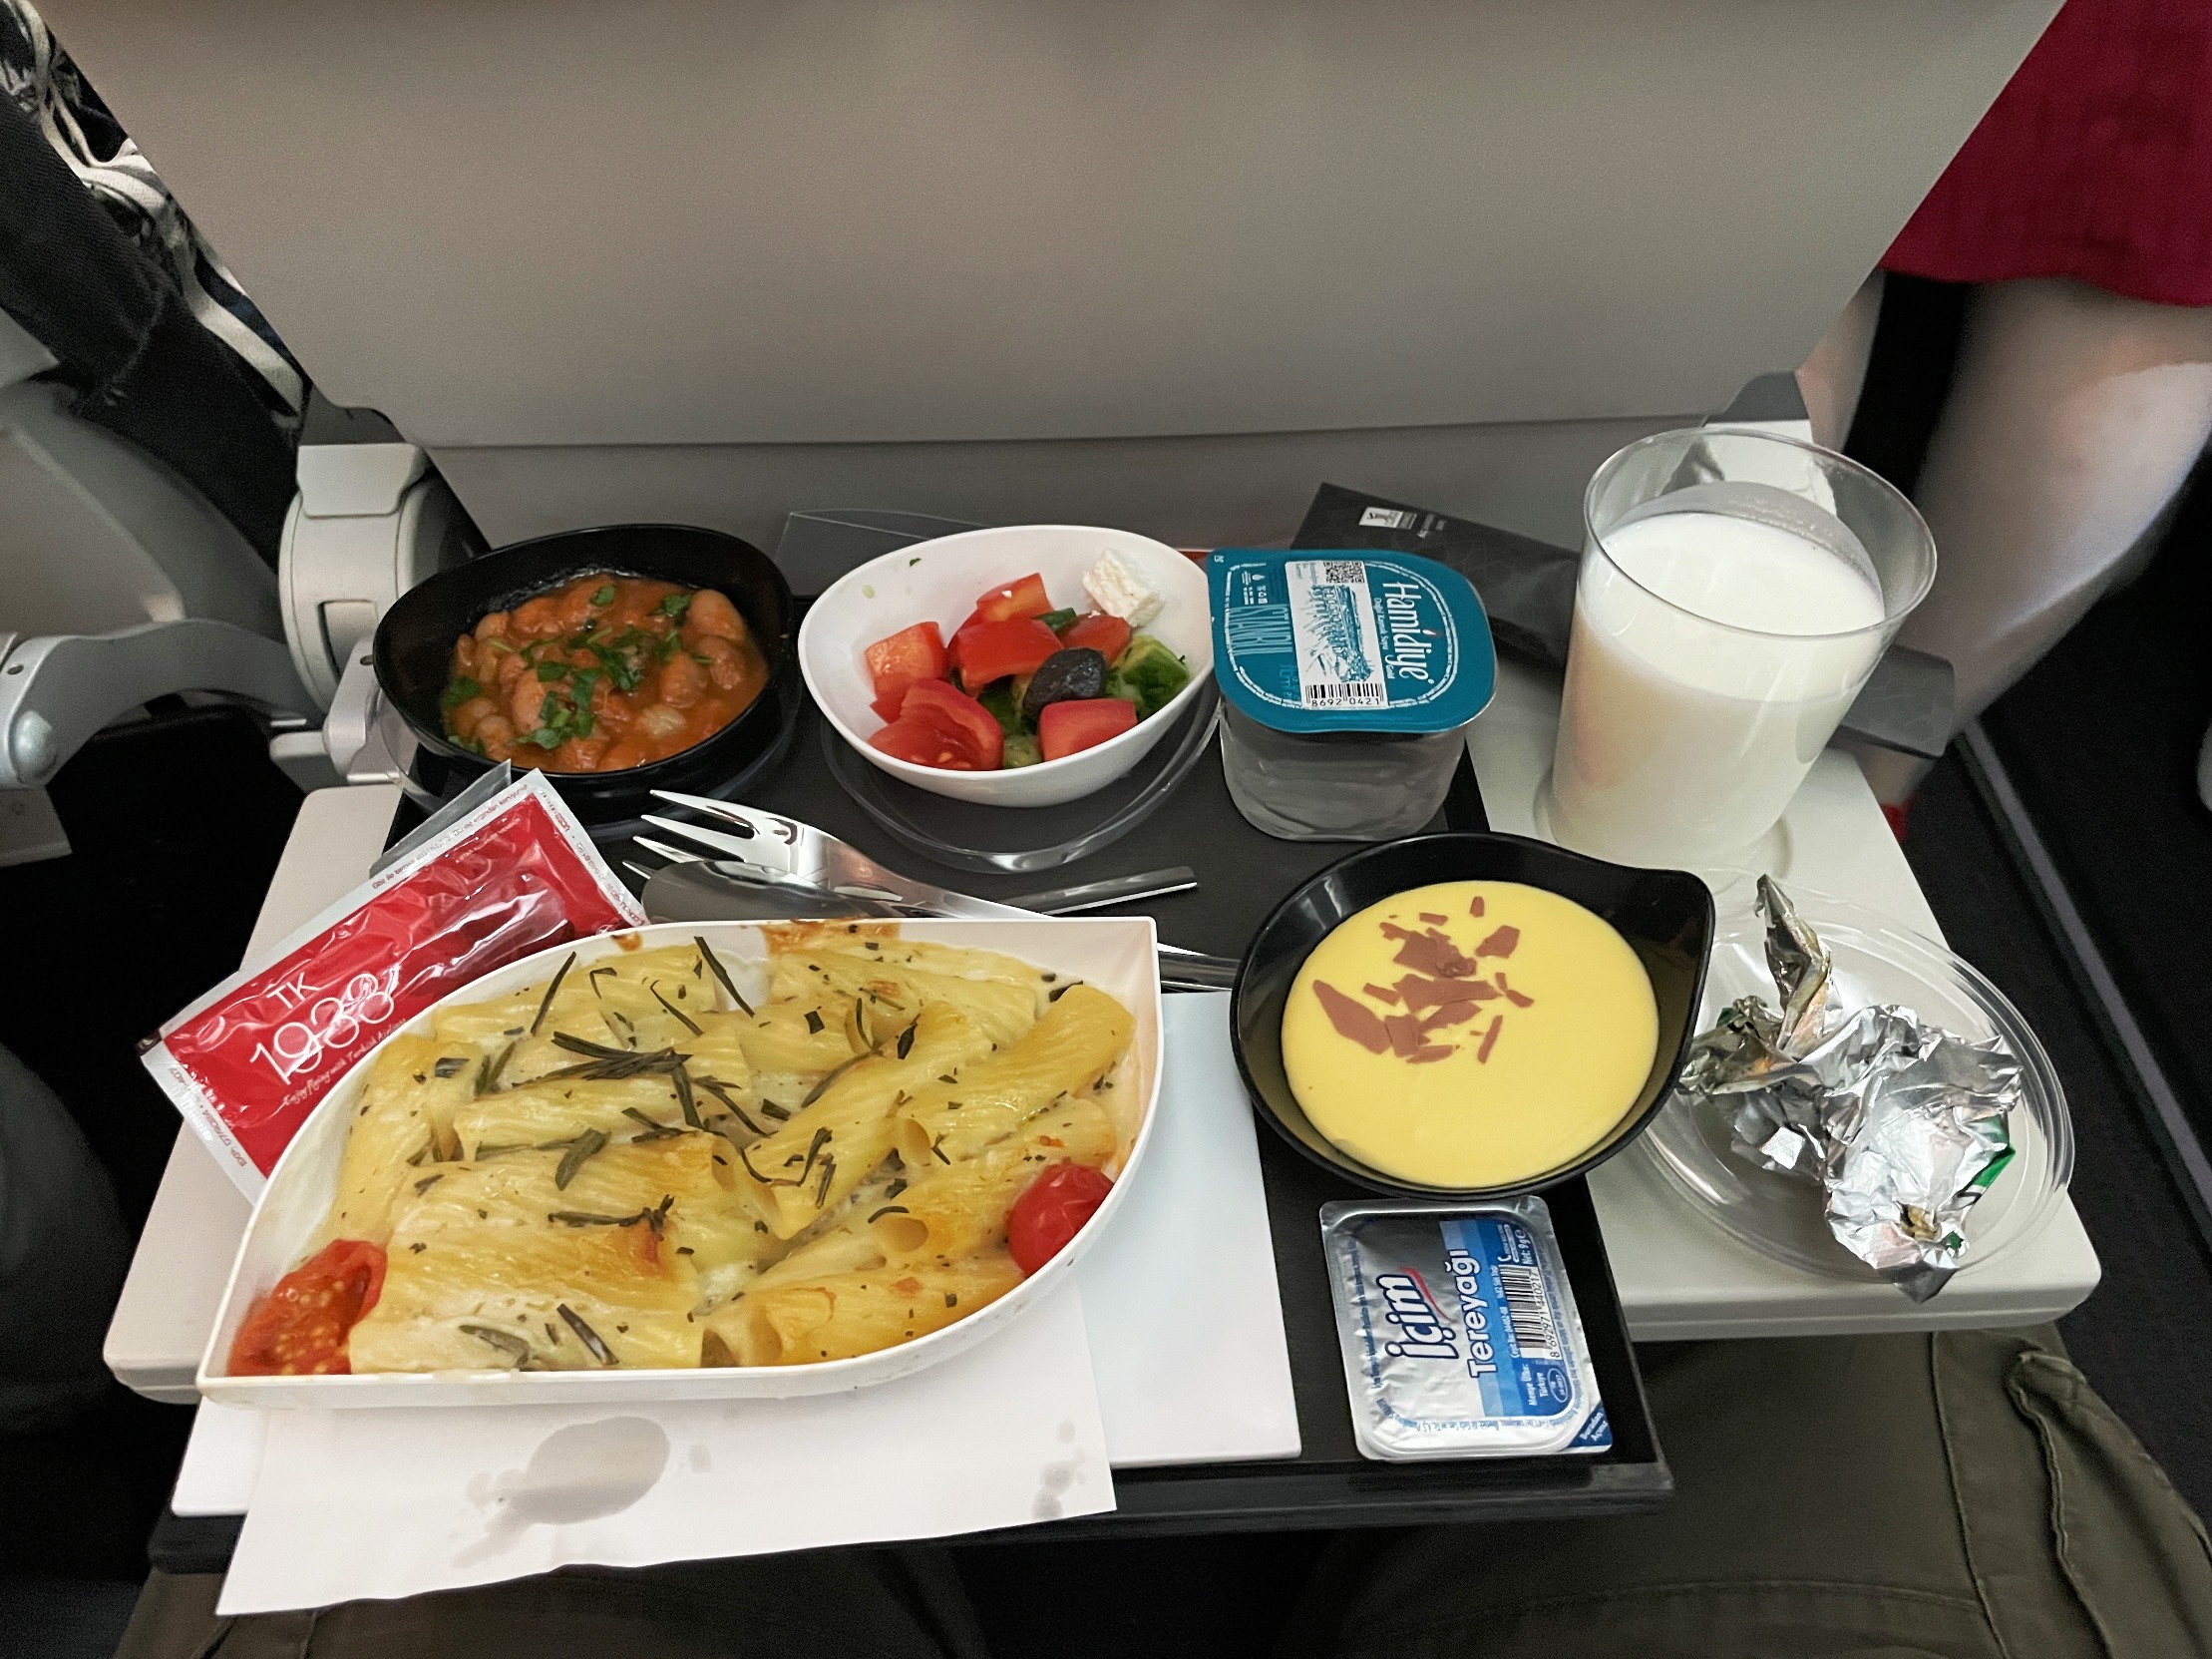 Türk Hava Yolları Economy Class Yemek İkramı (İstanbul – Singapur)